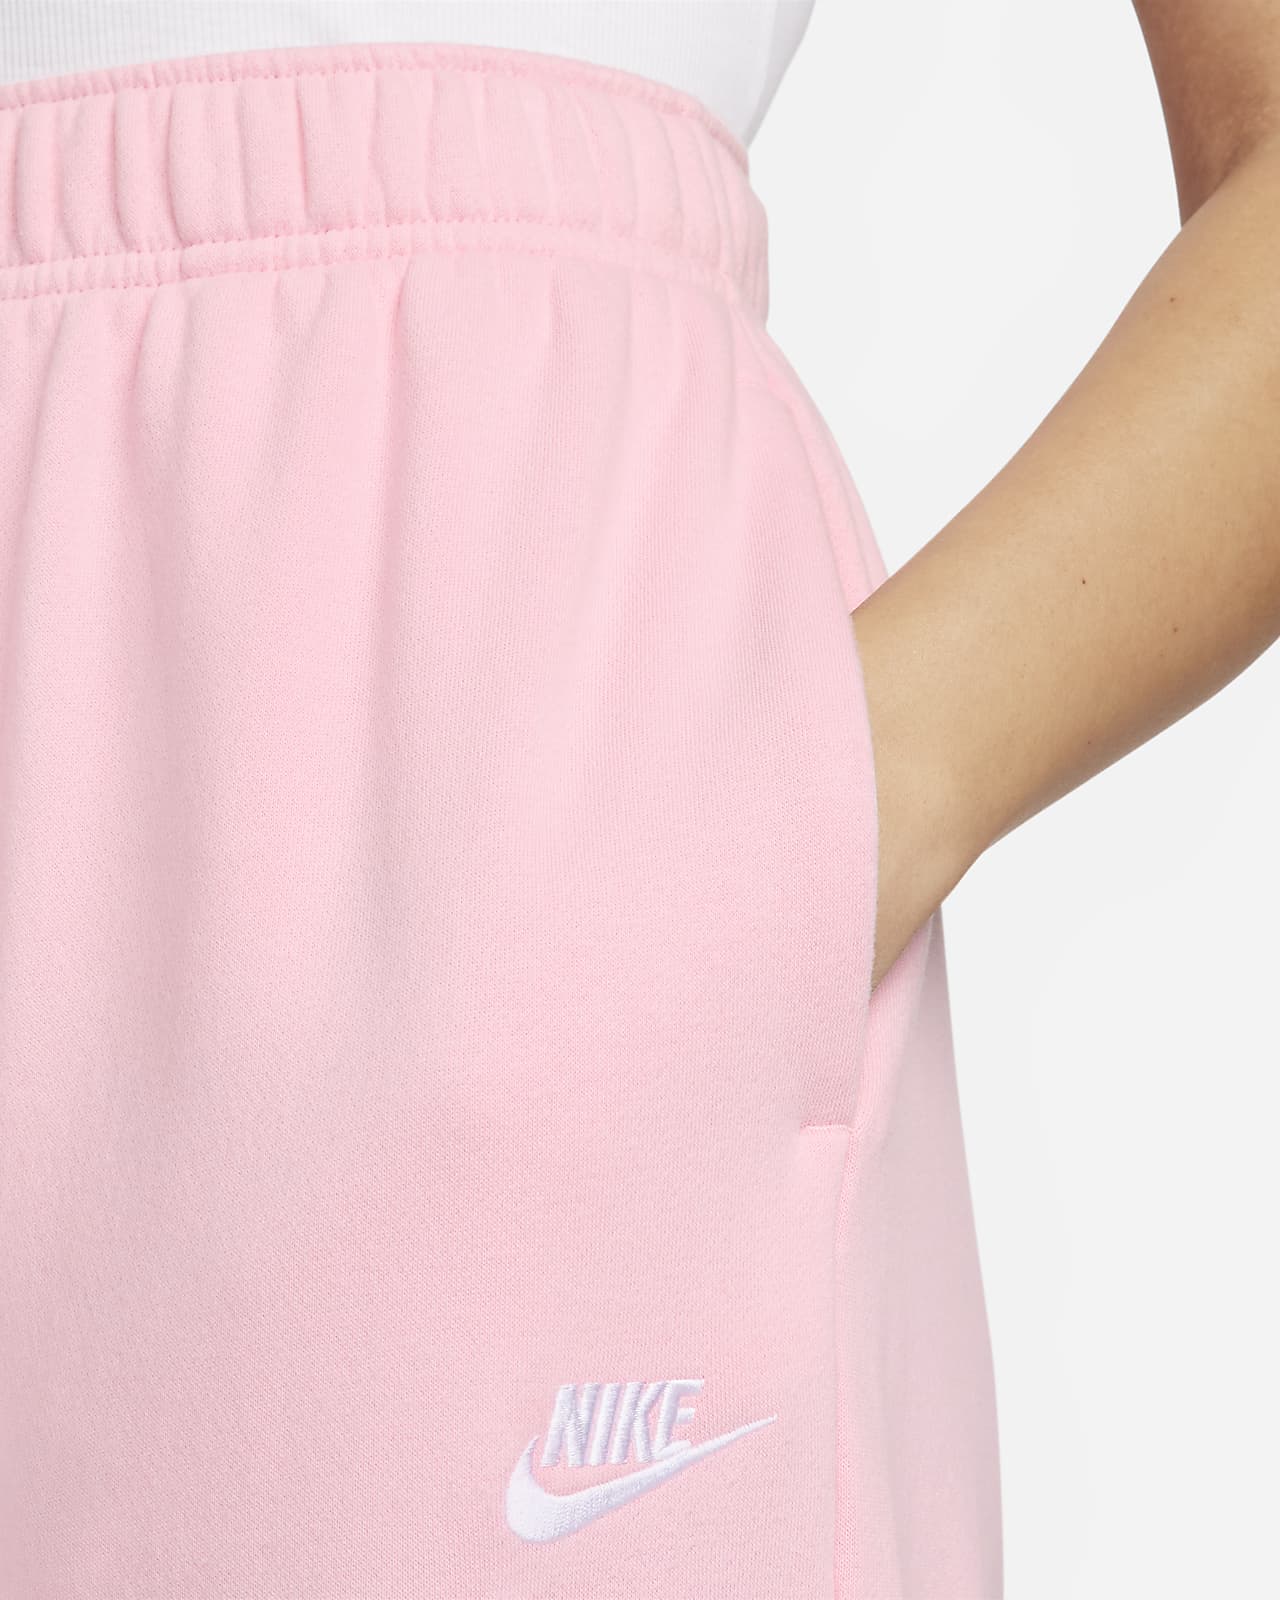 Nike Sportswear Club Fleece Women's Mid-Rise Wide-Leg Sweatpants. Nike.com